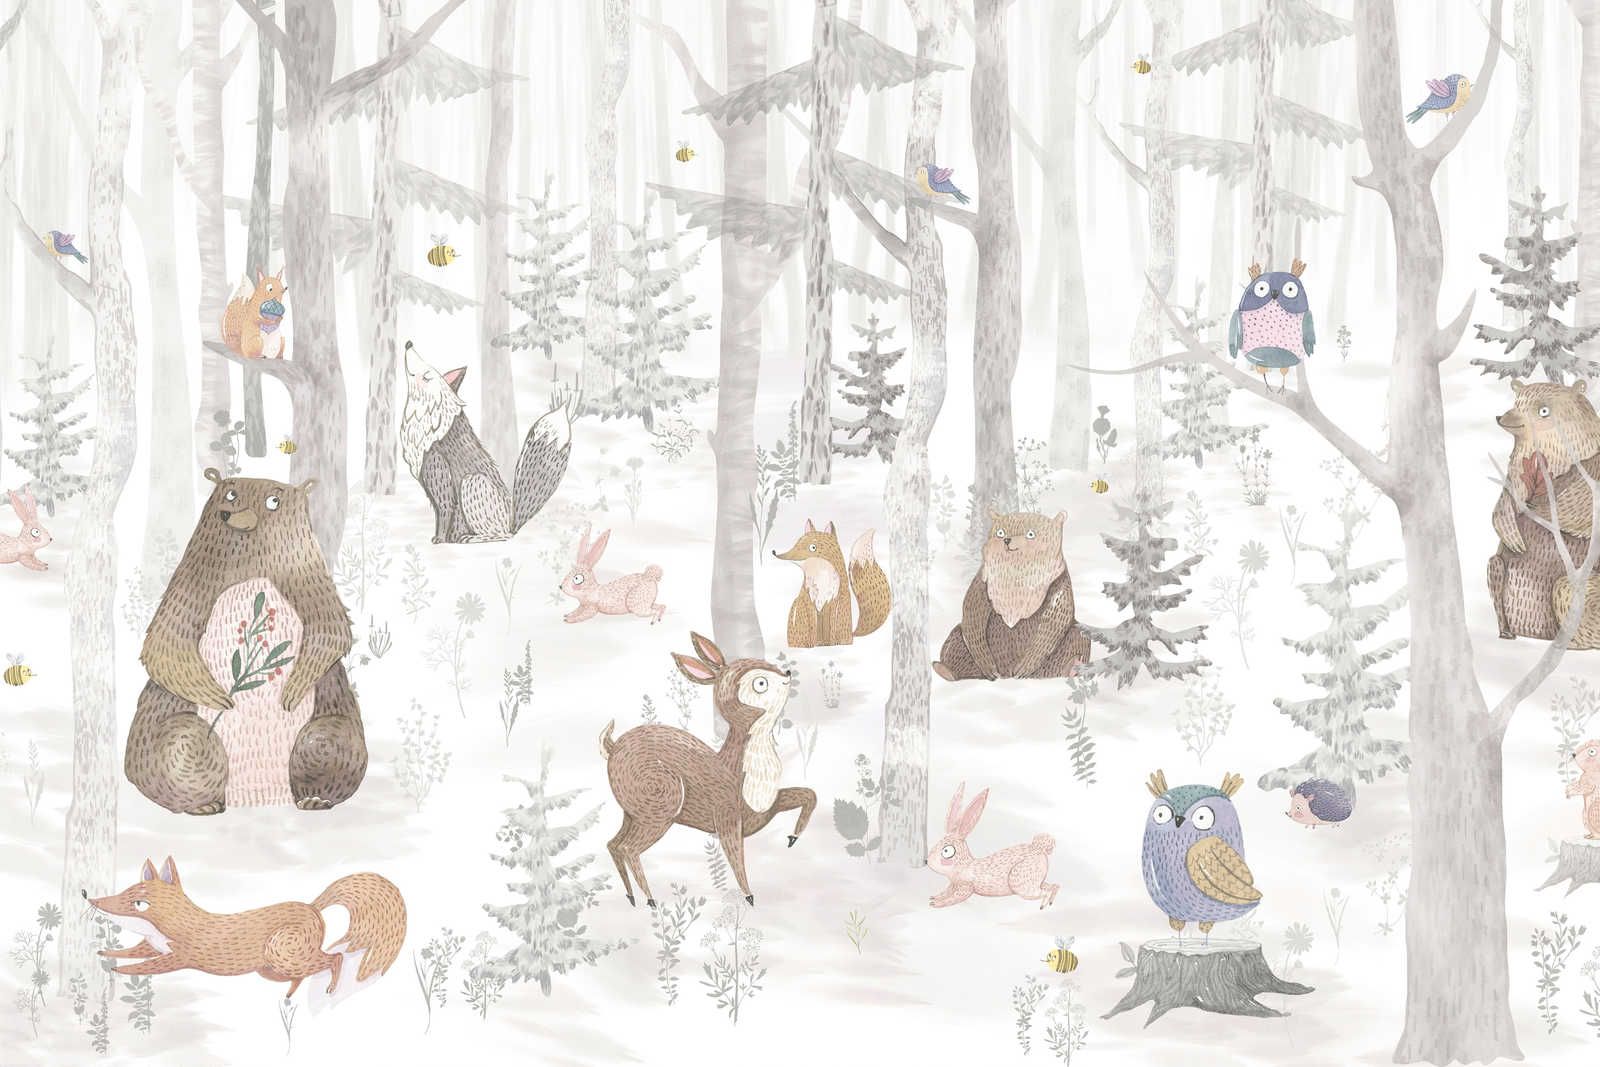             Toile Forêt enchantée avec animaux - 120 cm x 80 cm
        